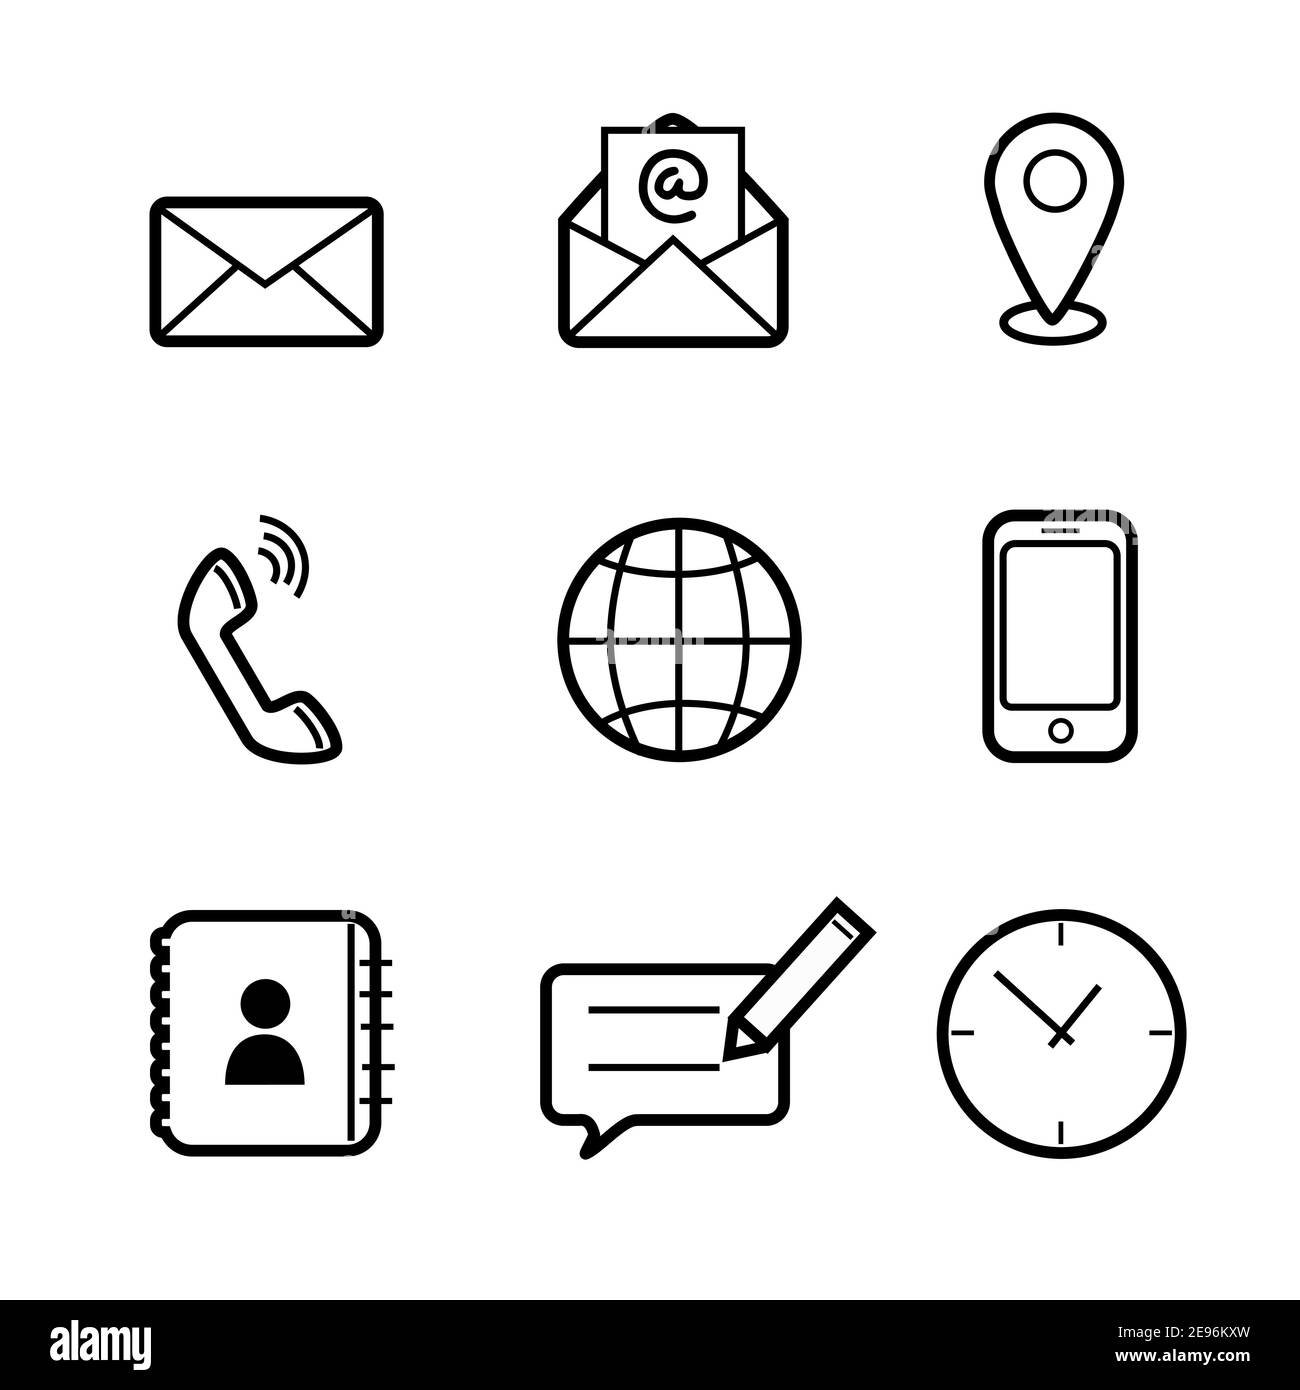 Stile piatto di Contattaci linea vettoriale set di icone per Business e Web Design. Simbolo di comunicazione in semplice minimalismo su sfondo bianco. Illustrazione Vettoriale